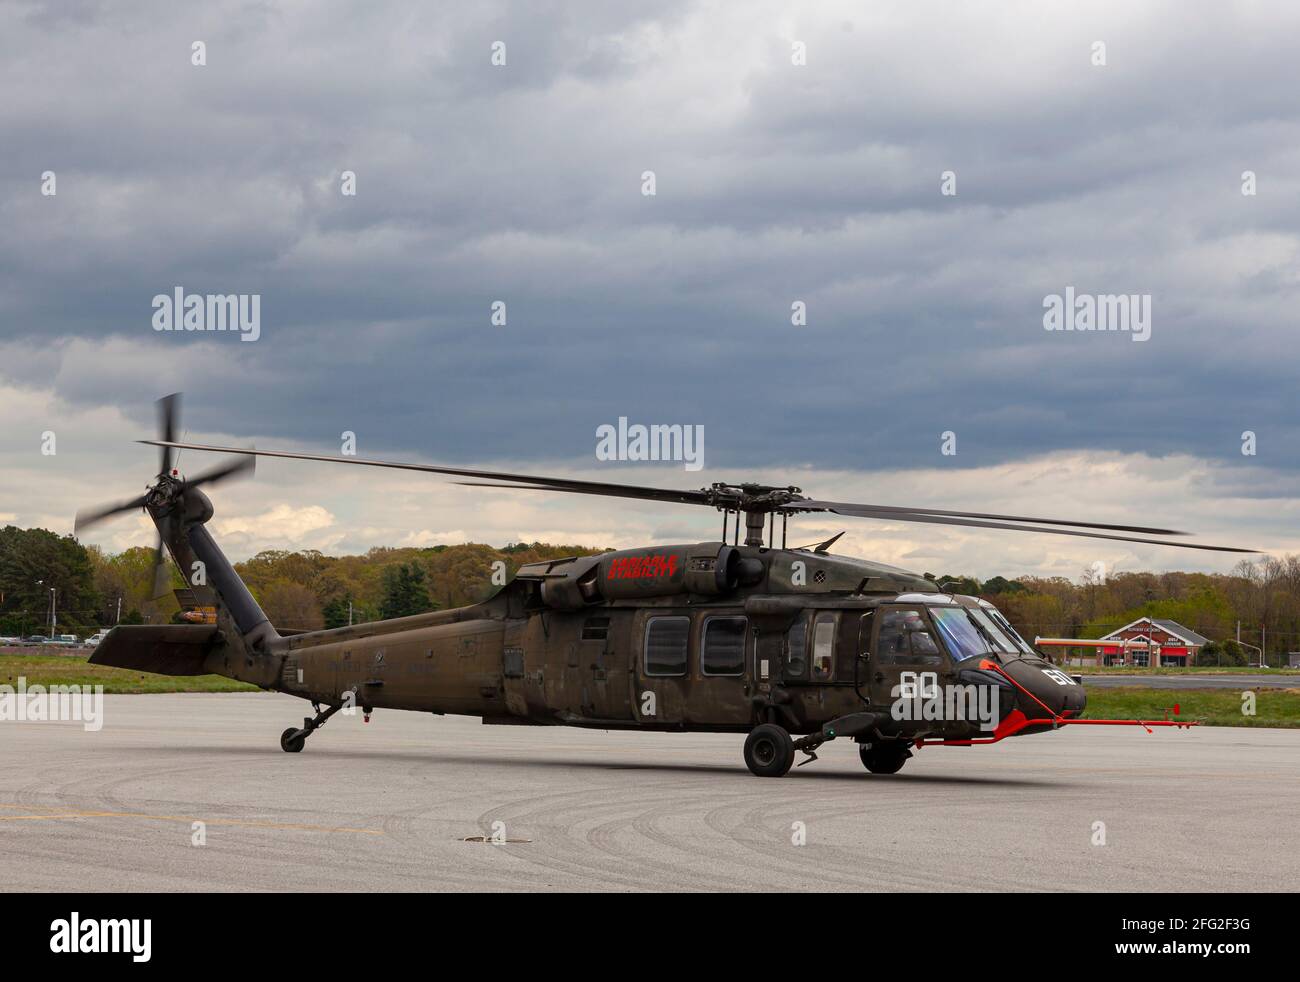 Easton, Maryland, USA, 04-16-2021: Ein Sikorsky UH-60 Black Hawk Helikopter macht sich bereit zum Start, indem er die Motoren und Propeller bei einem A anlässt Stockfoto